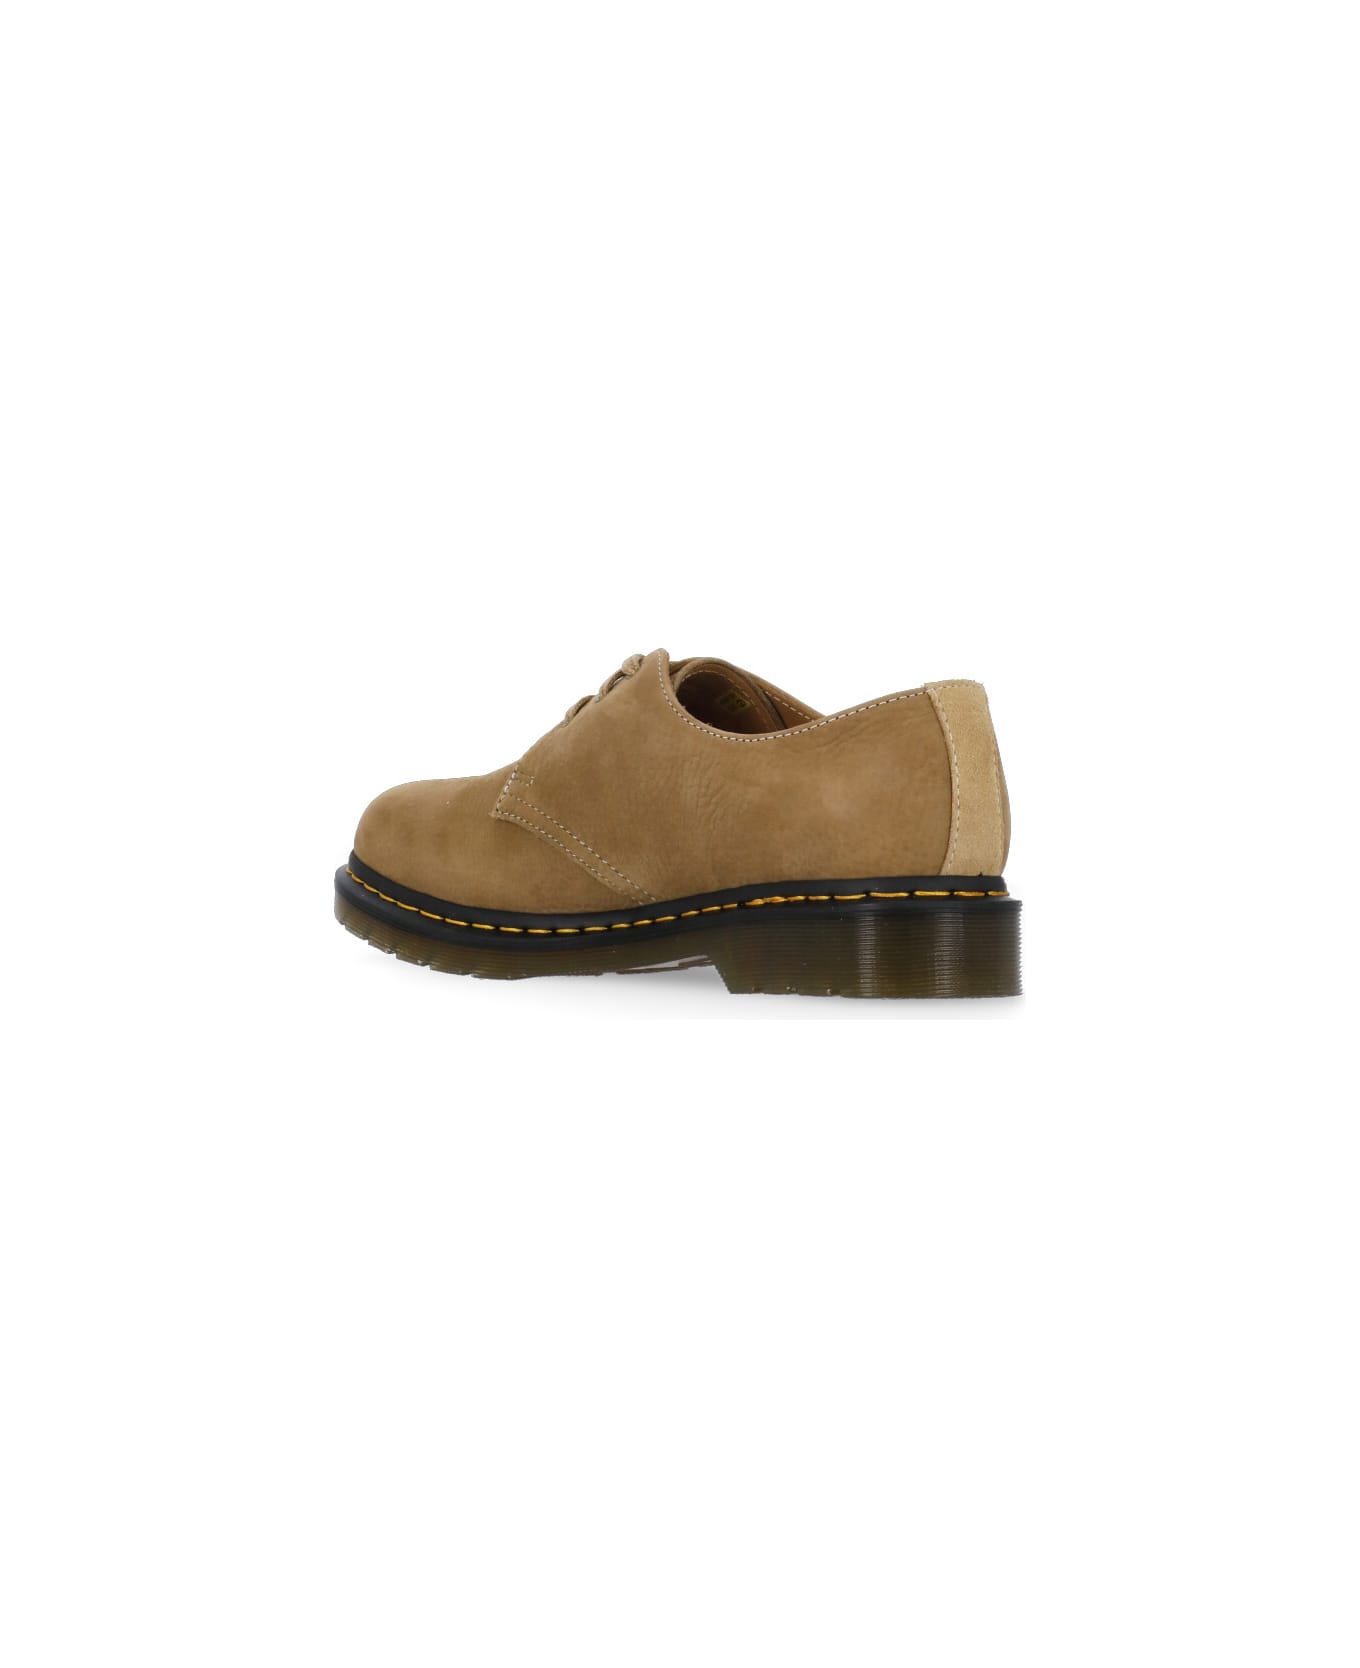 Dr. Martens 1461 Lace-up Oxford Shoes - Beige